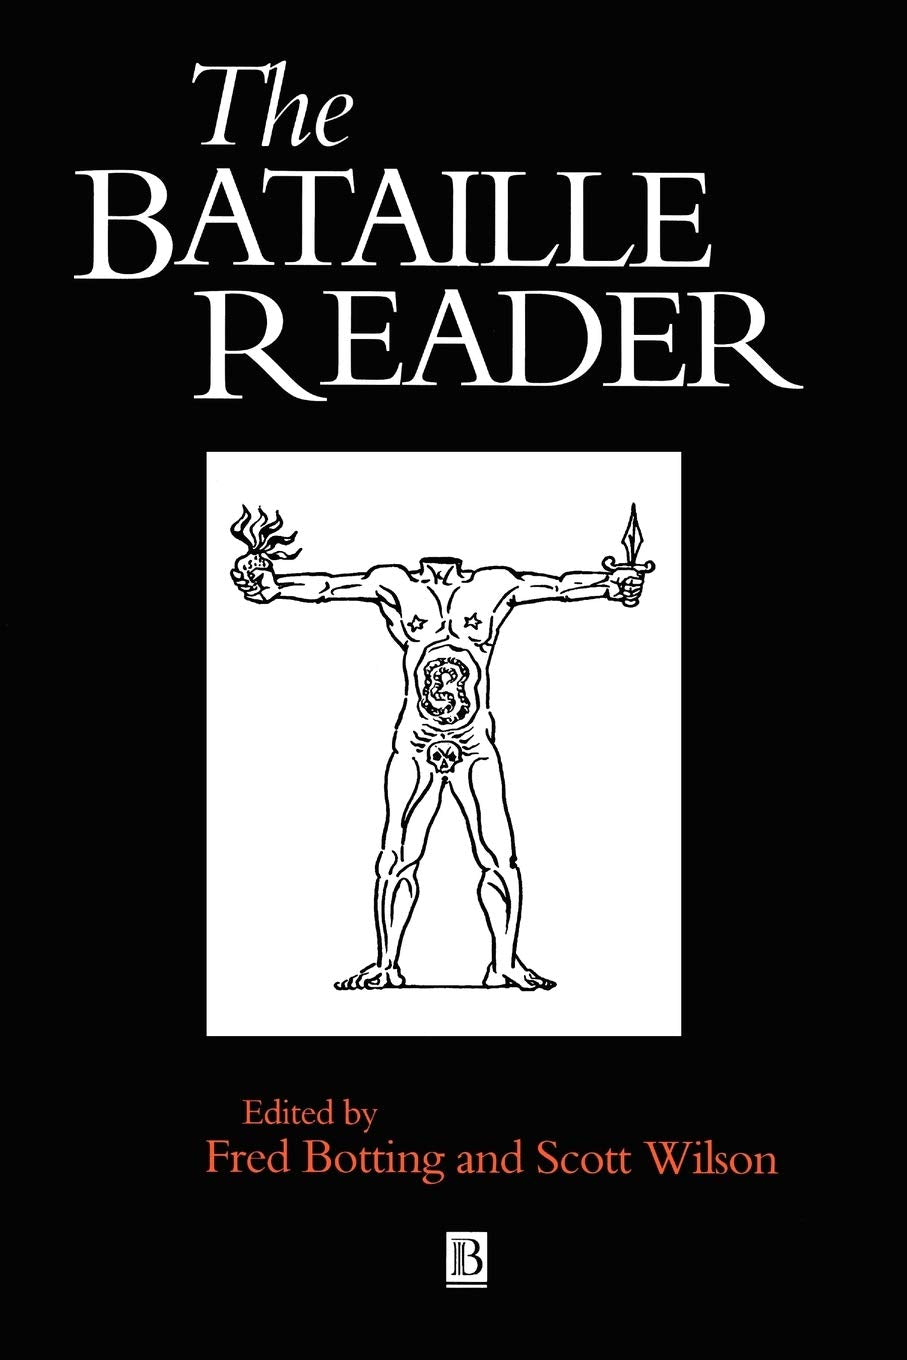 The Bataille Reader ร้านหนังสือและสิ่งของ เป็นร้านหนังสือภาษาอังกฤษหายาก และร้านกาแฟ หรือ บุ๊คคาเฟ่ ตั้งอยู่สุขุมวิท กรุงเทพ